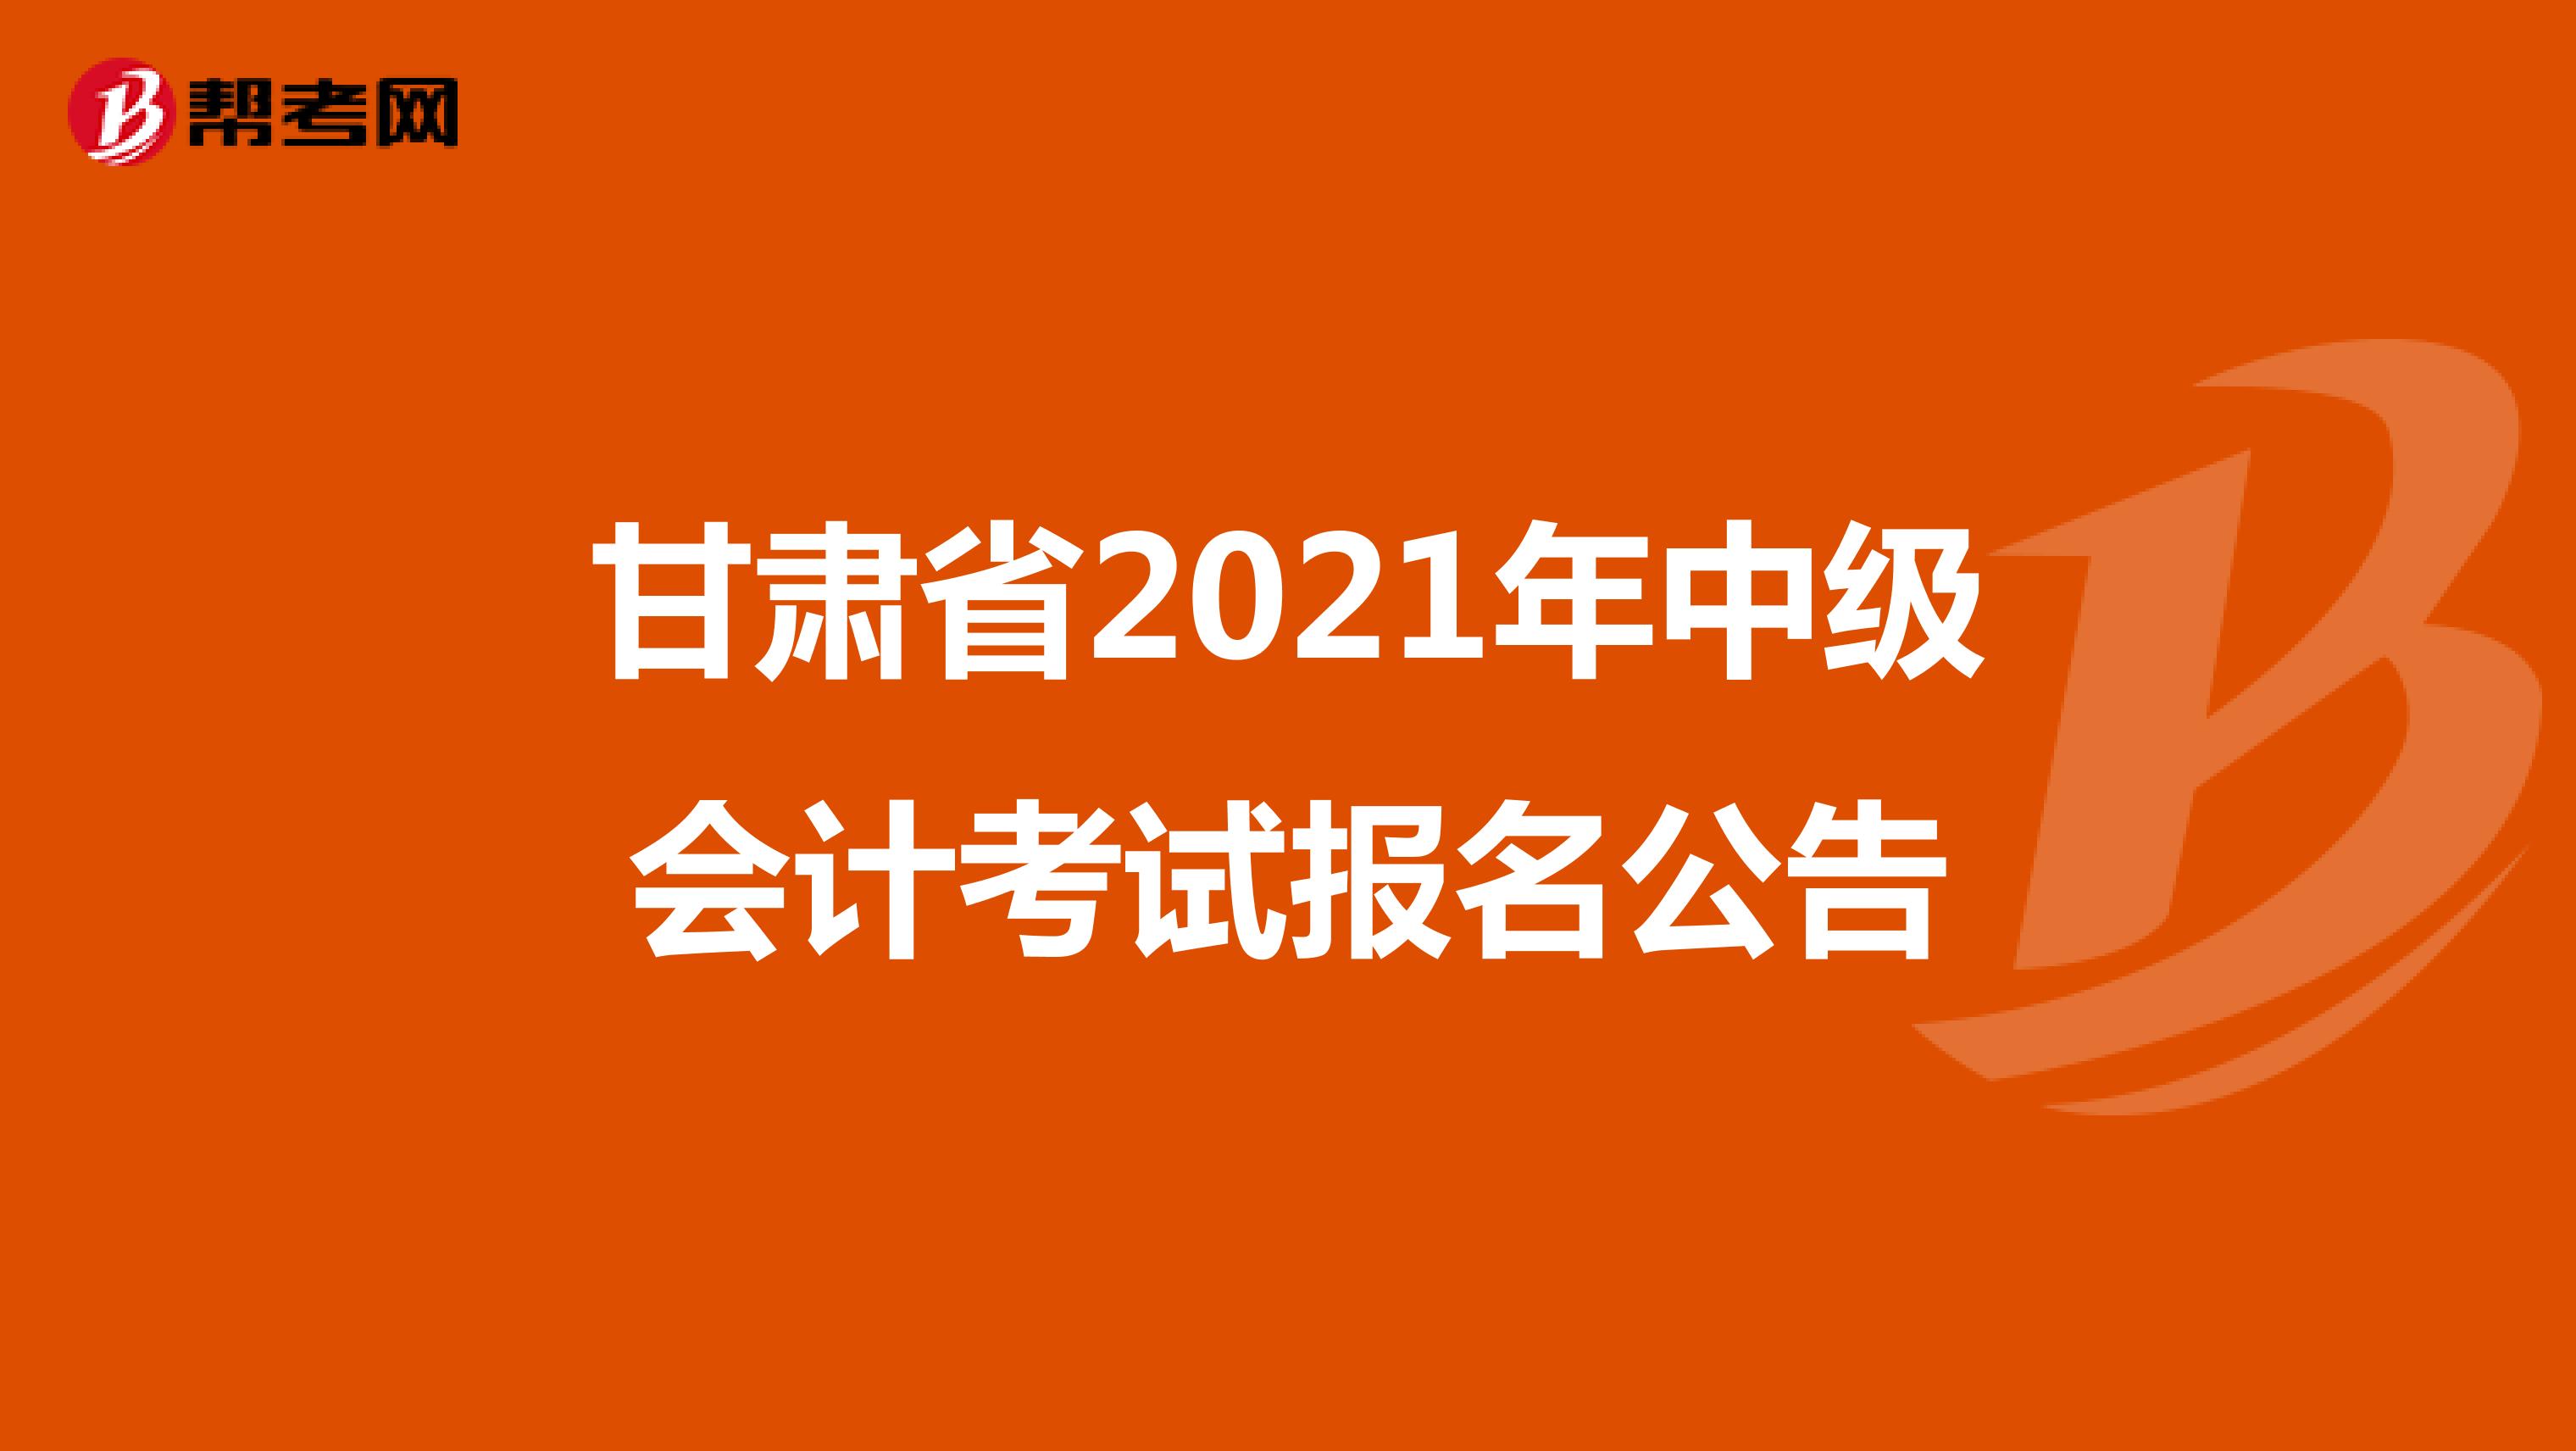 甘肃省2021年中级会计考试报名公告